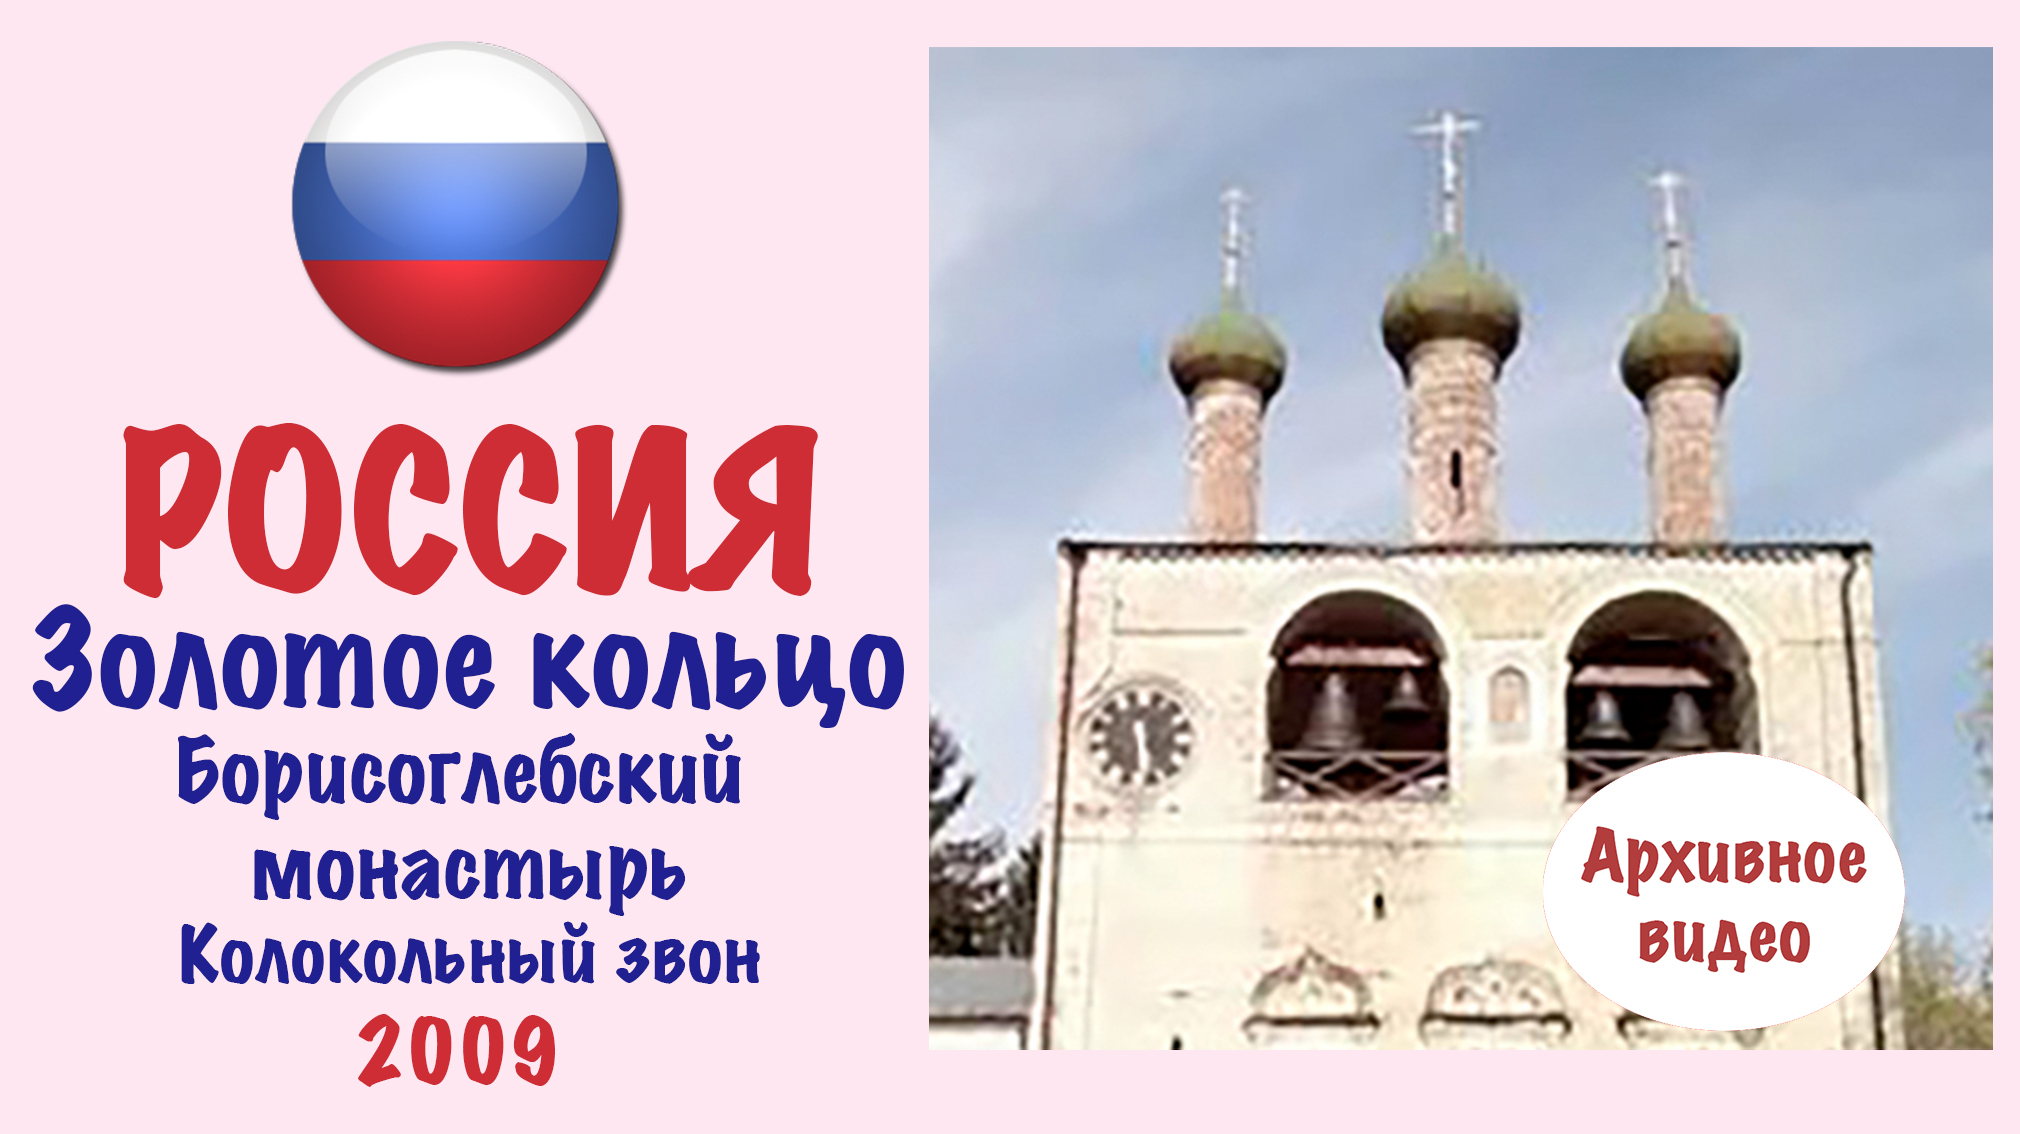 Борисоглебский монастырь (Золотое кольцо России) Колокольный звон электронных часов.